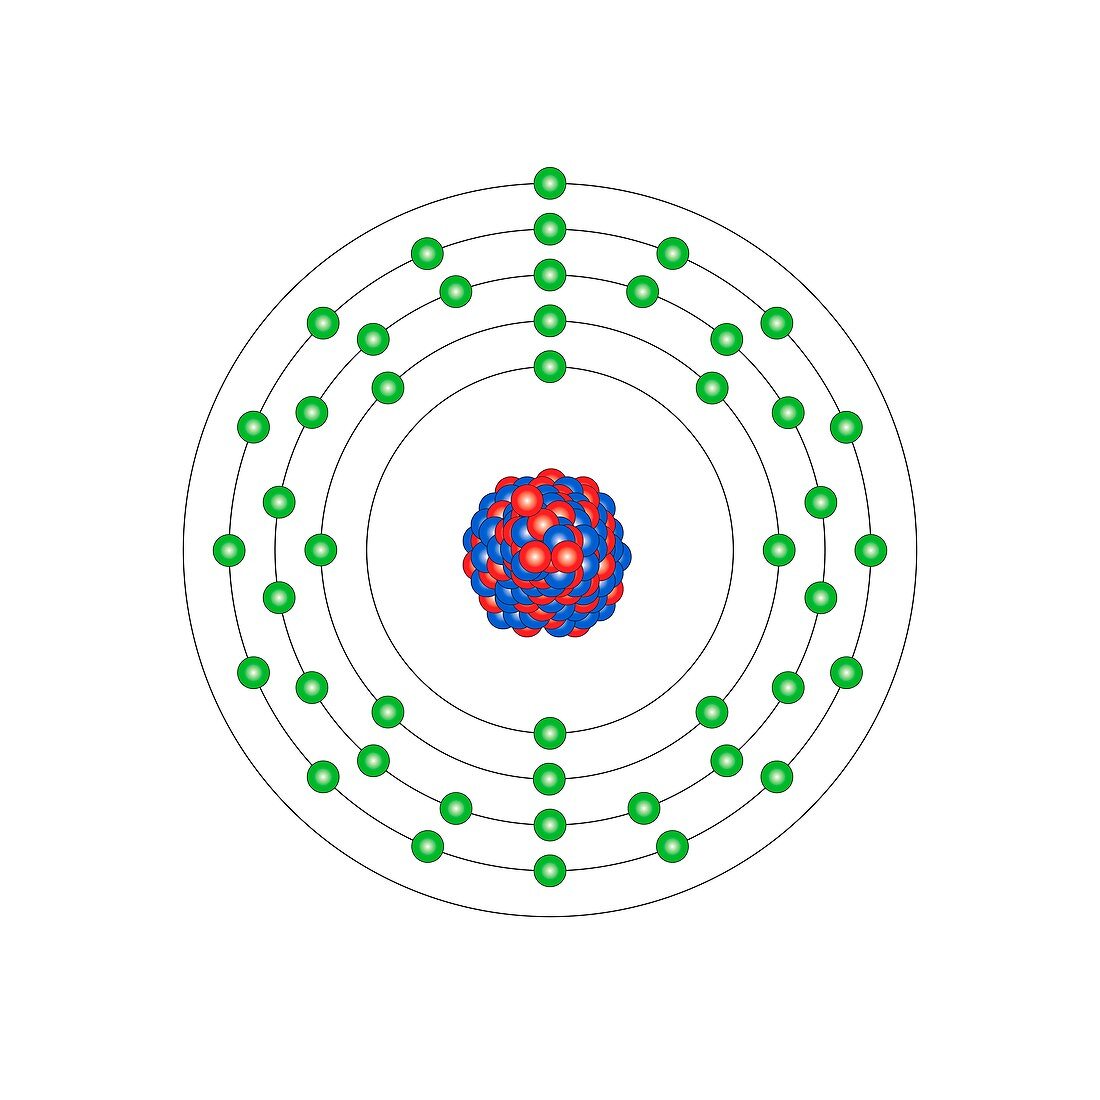 Rhodium,atomic structure